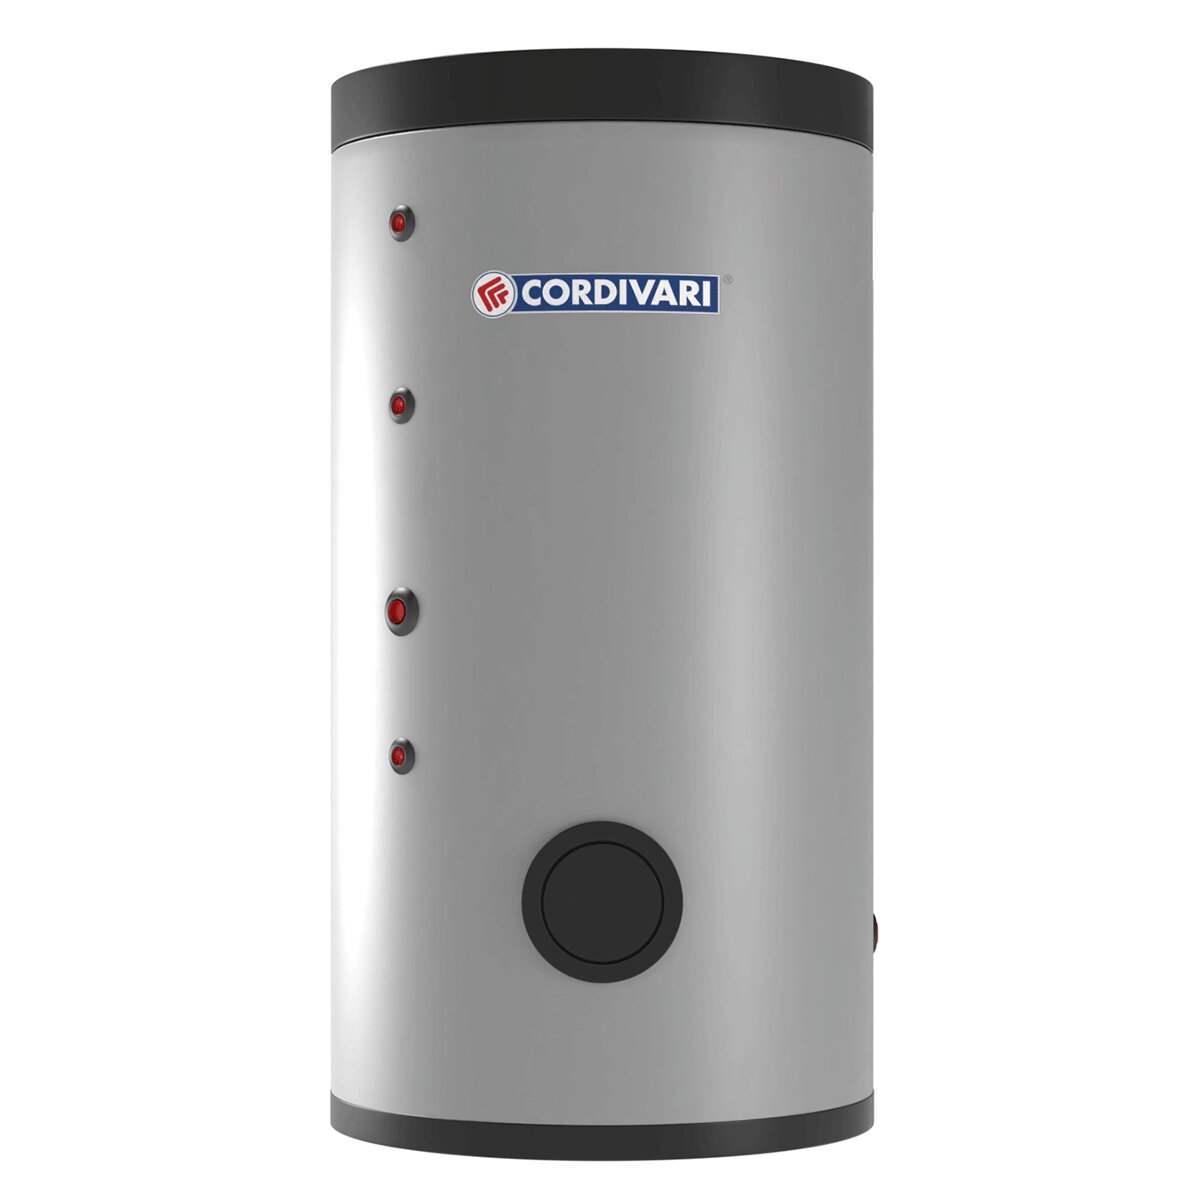 Cordivari BOLLY 2 XL WB Wasserkessel für sanitäres Warmwasser mit 2 festen Wärmetauschern 300 Liter